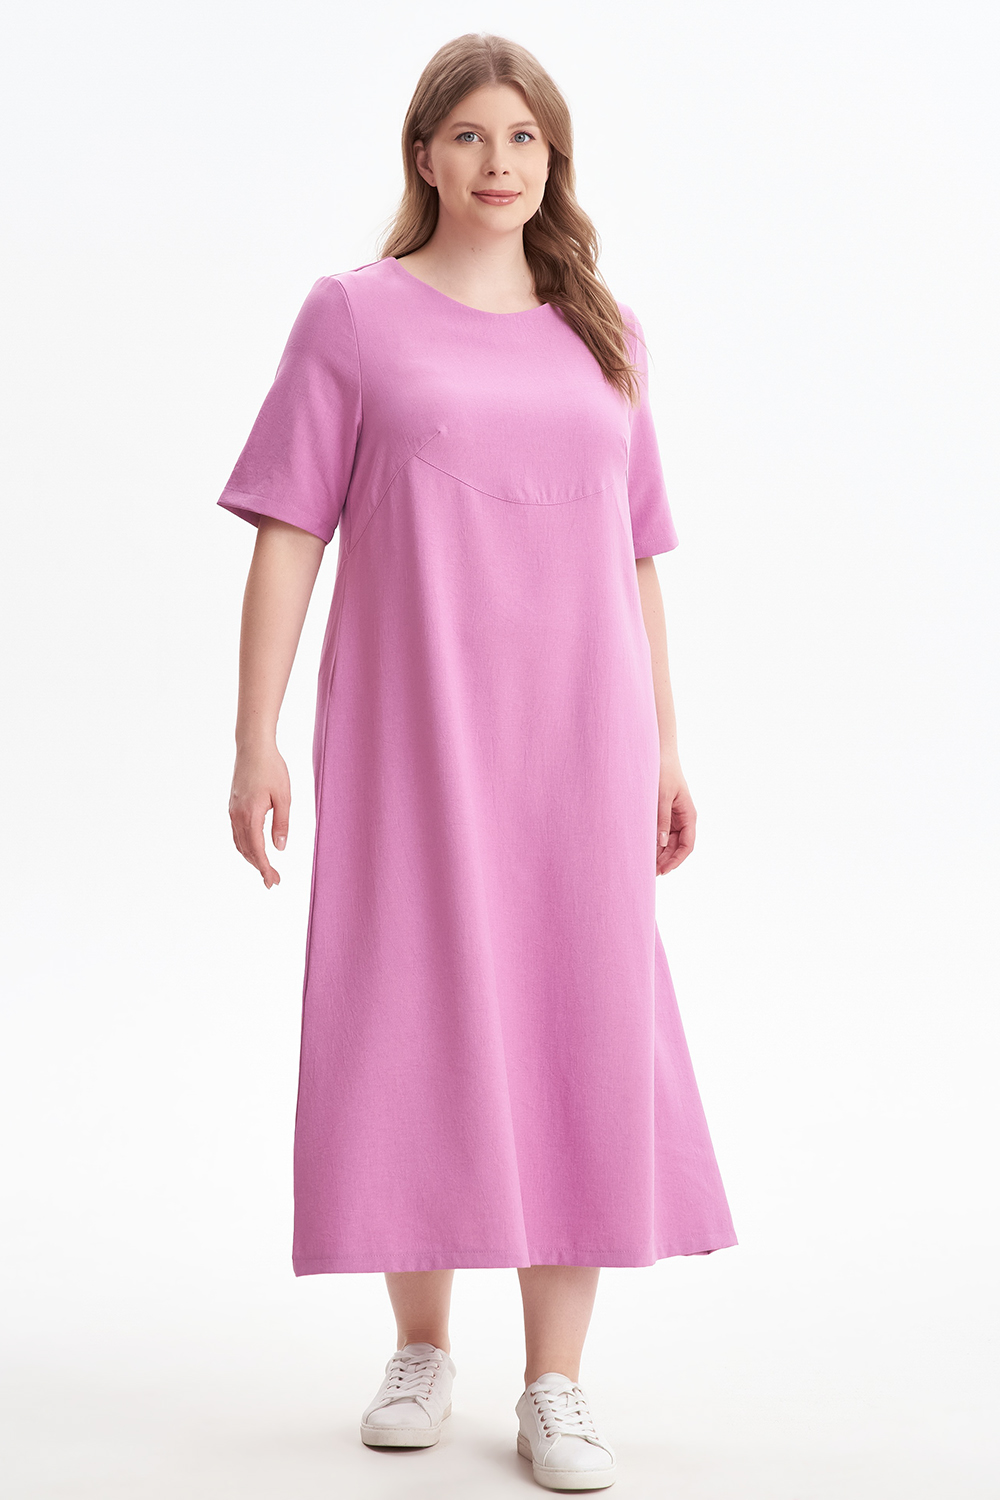 Платье женское OLSI 2305012 розовое 54 RU